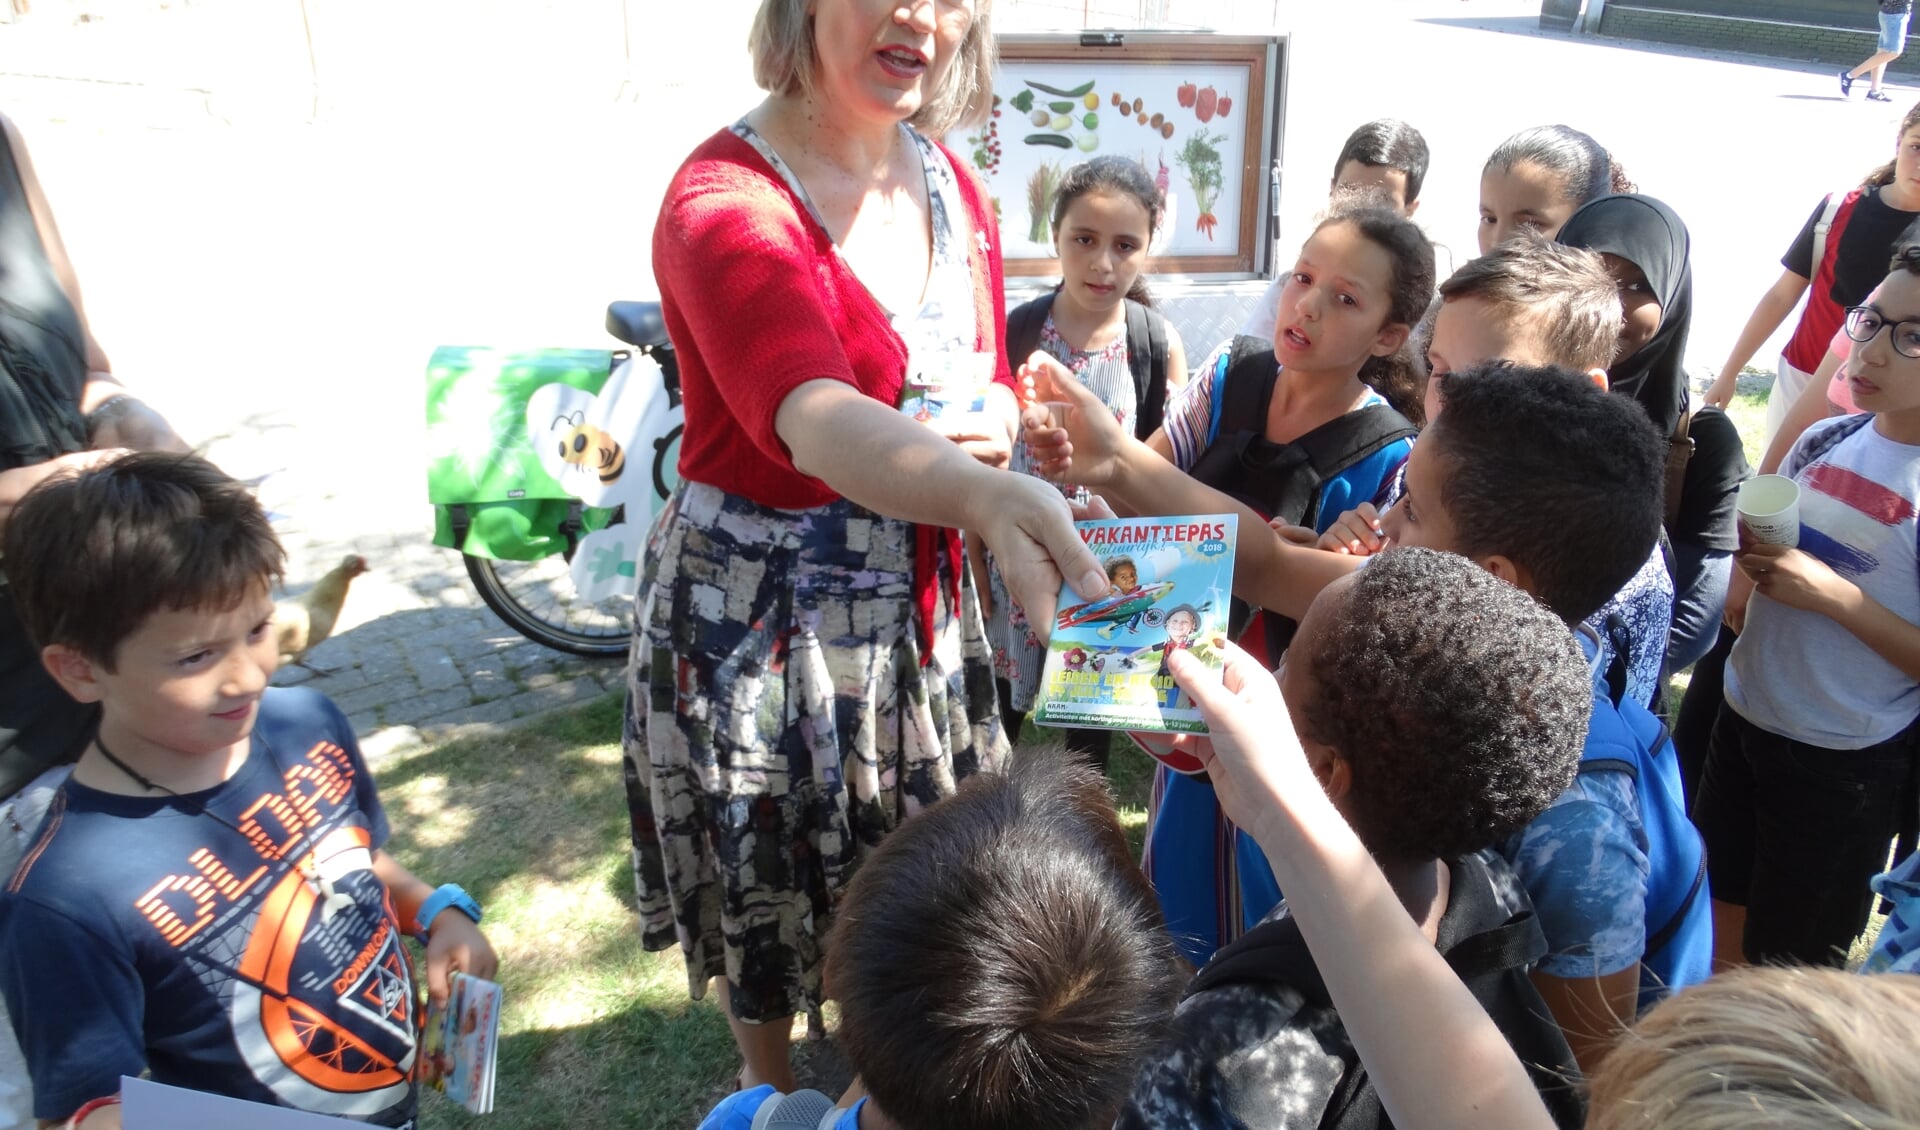 De Leidse wethouder Martine Leewis heeft donderdag 5 juli een ‘Natuurlijke’ VakantiePas uitgereikt aan groep 6 en 7 van de Merenwijkschool bij Kinderboerderij Merenwijk in Leiden. 